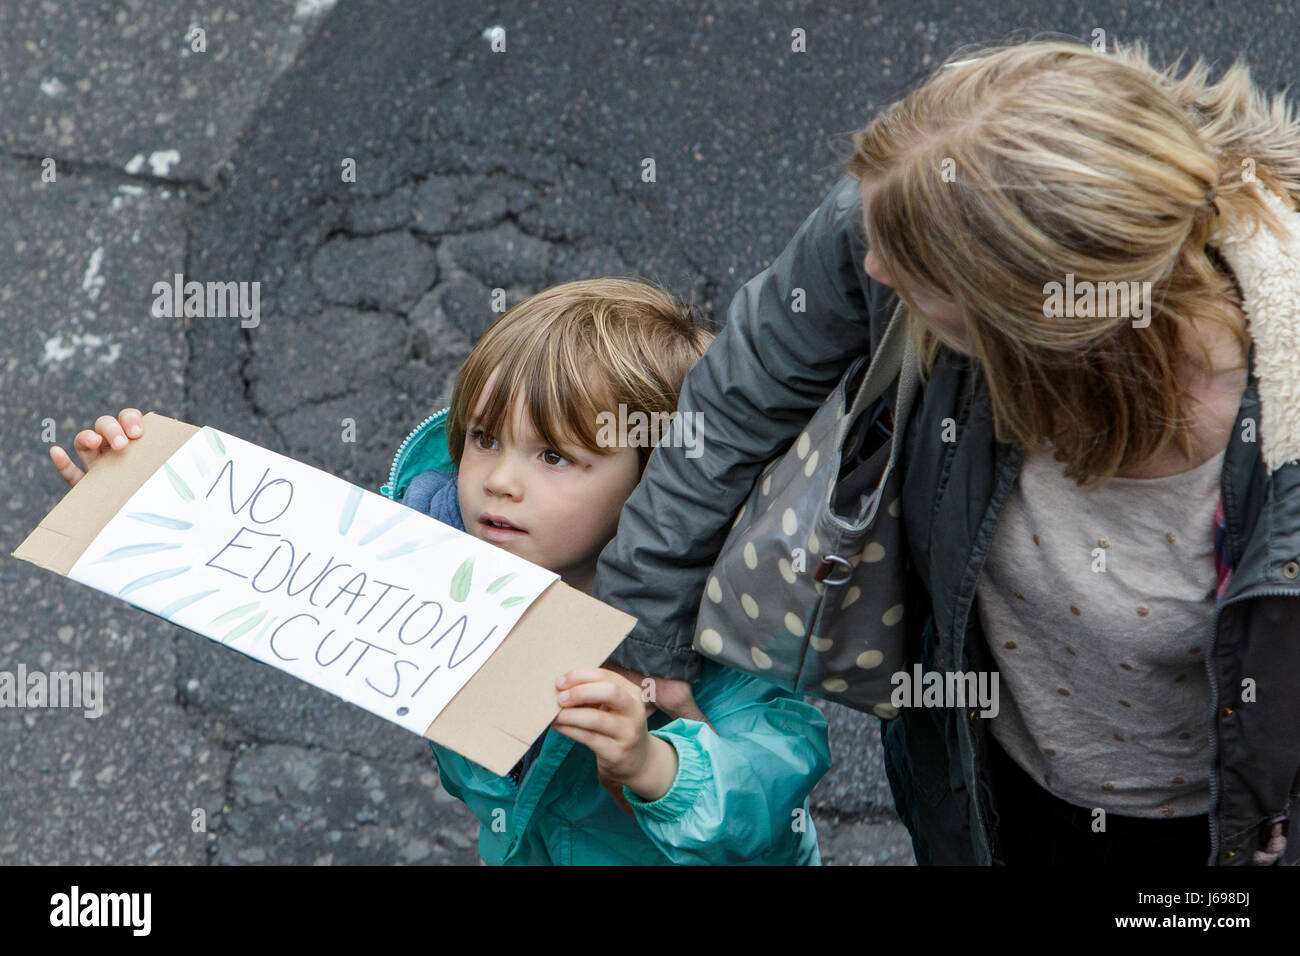 Bristol, UK. 20. Mai 2017. Ein kleines Kind, die Teilnahme an einem Protestmarsch Bildung hält seine Plakat, Fotografen stehen auf einer Brücke über ihm zu zeigen, war der Marsch, Bildung zu verteidigen und das Schneiden von Mitteln für Schulen nicht mehr statt. Bildnachweis: Lynchpics/Alamy Live-Nachrichten Stockfoto